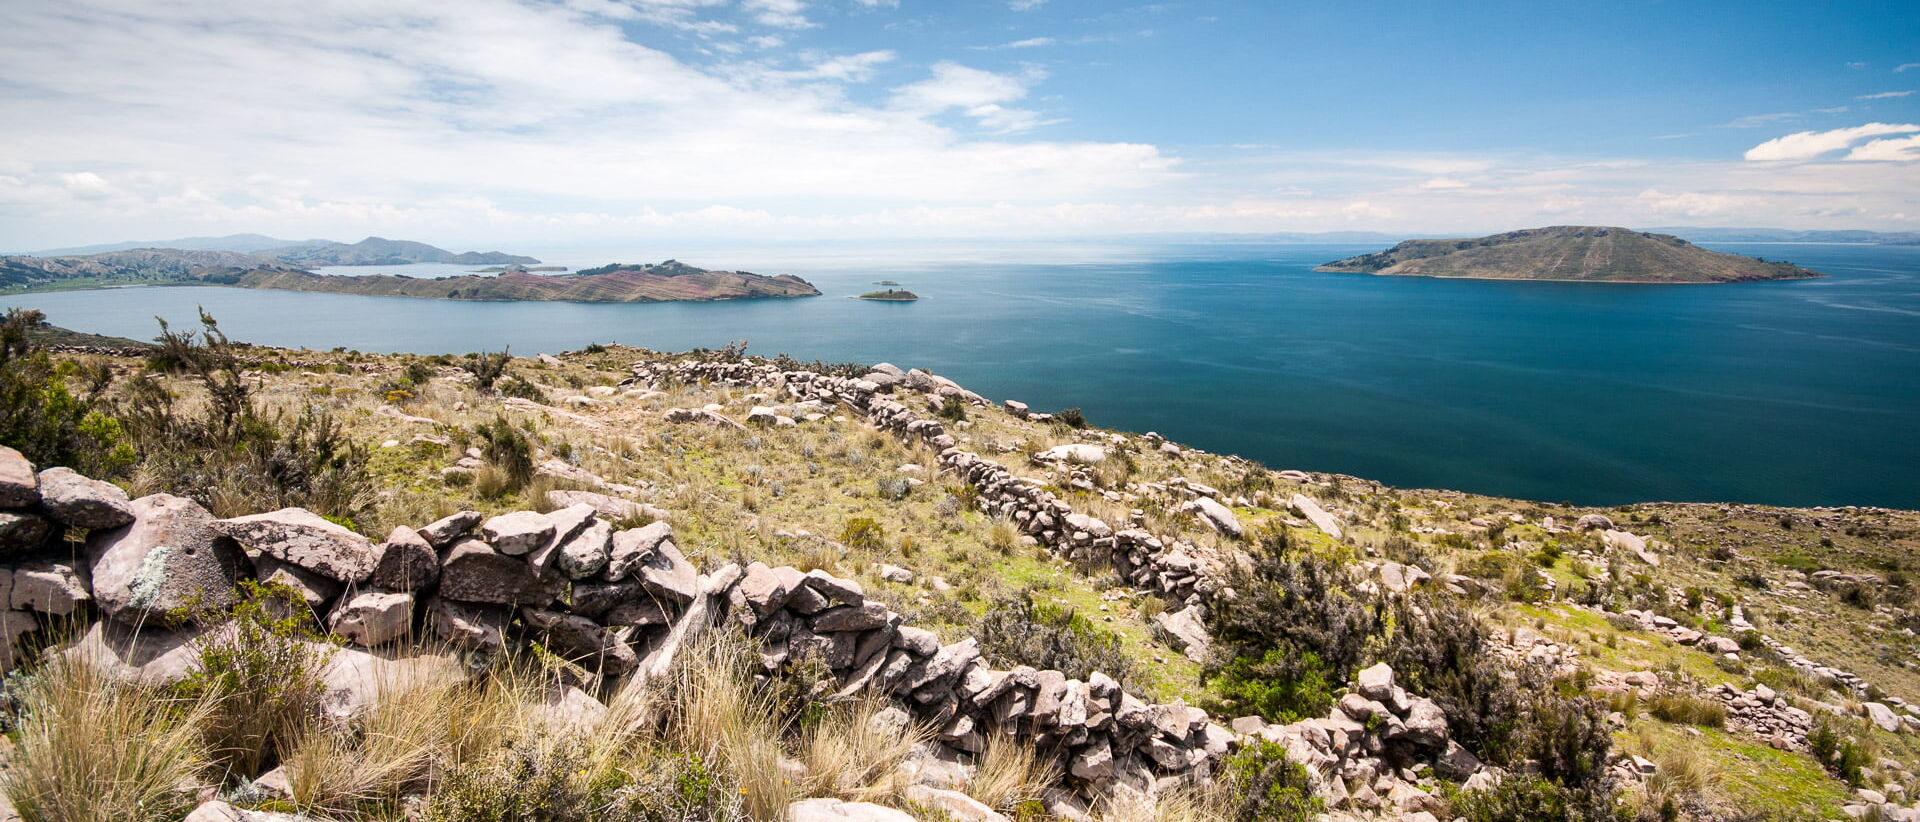 péninsule de capachica, lac titicaca, pérou